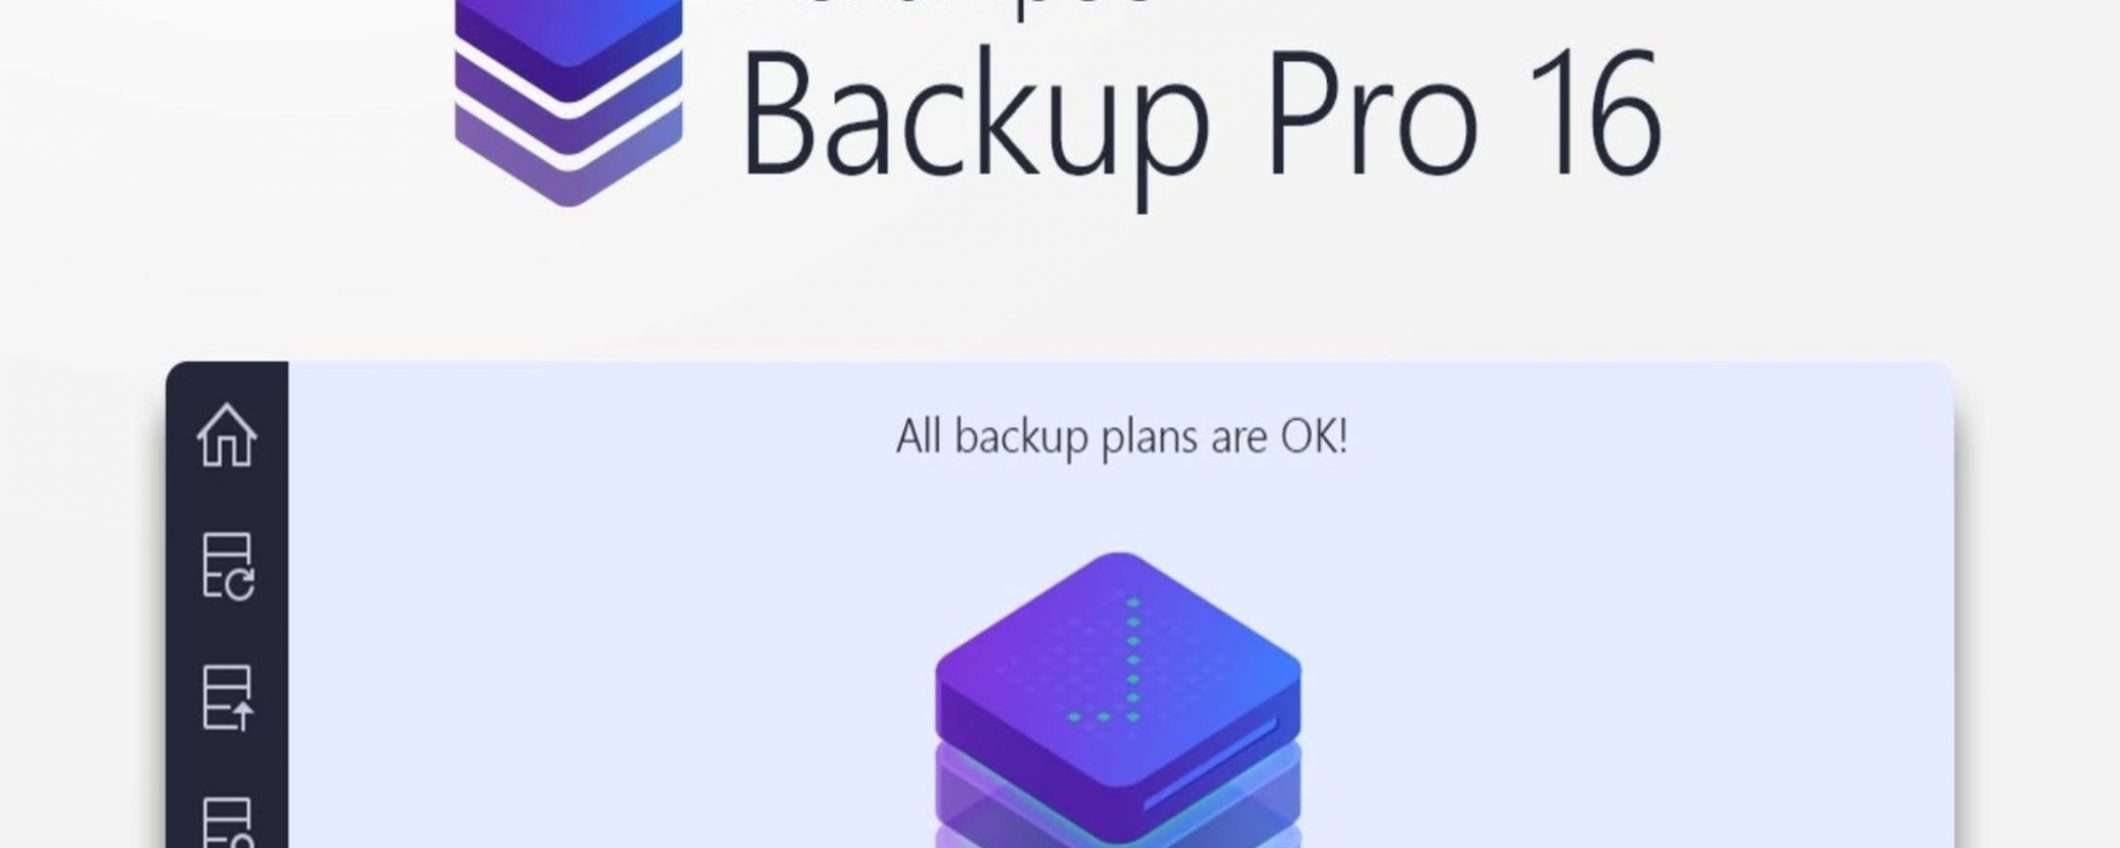 Ashampoo Backup Pro 16: tutelate i vostri dati con questo software al 50% in meno